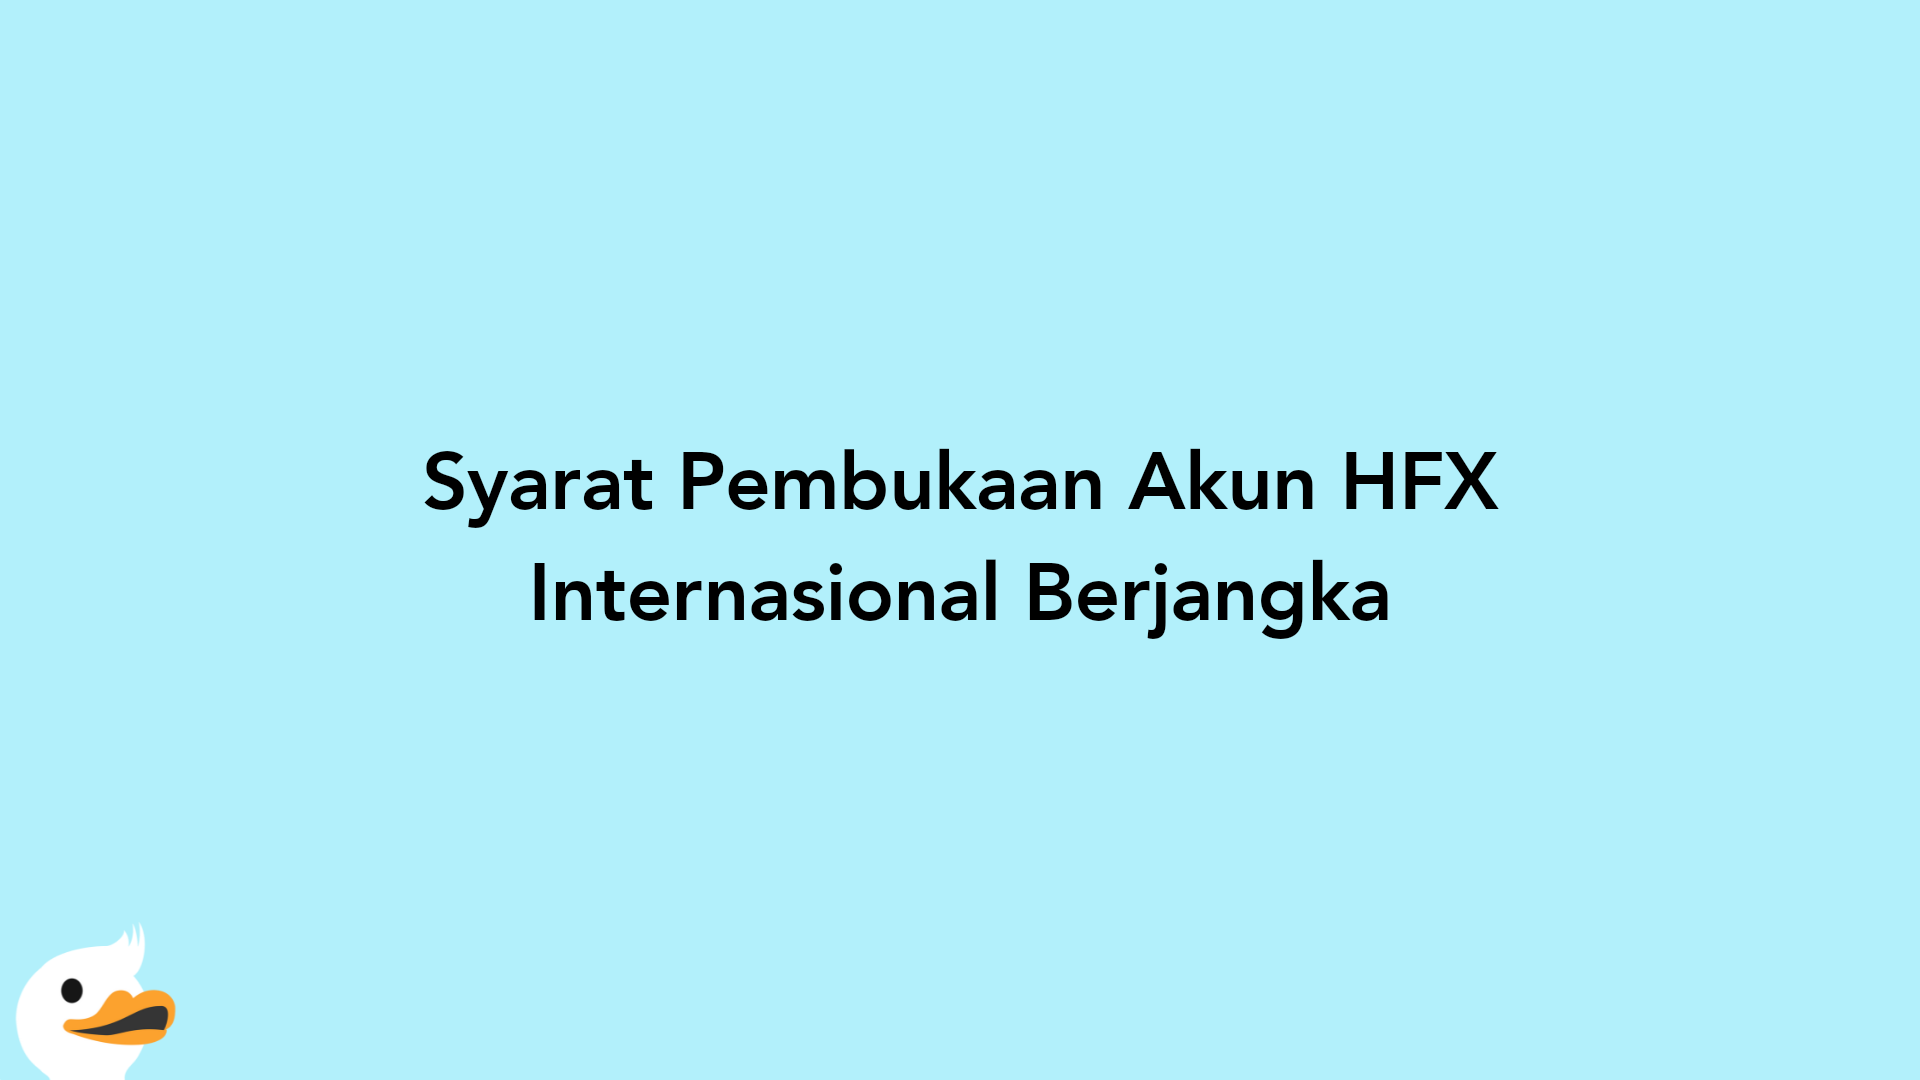 Syarat Pembukaan Akun HFX Internasional Berjangka